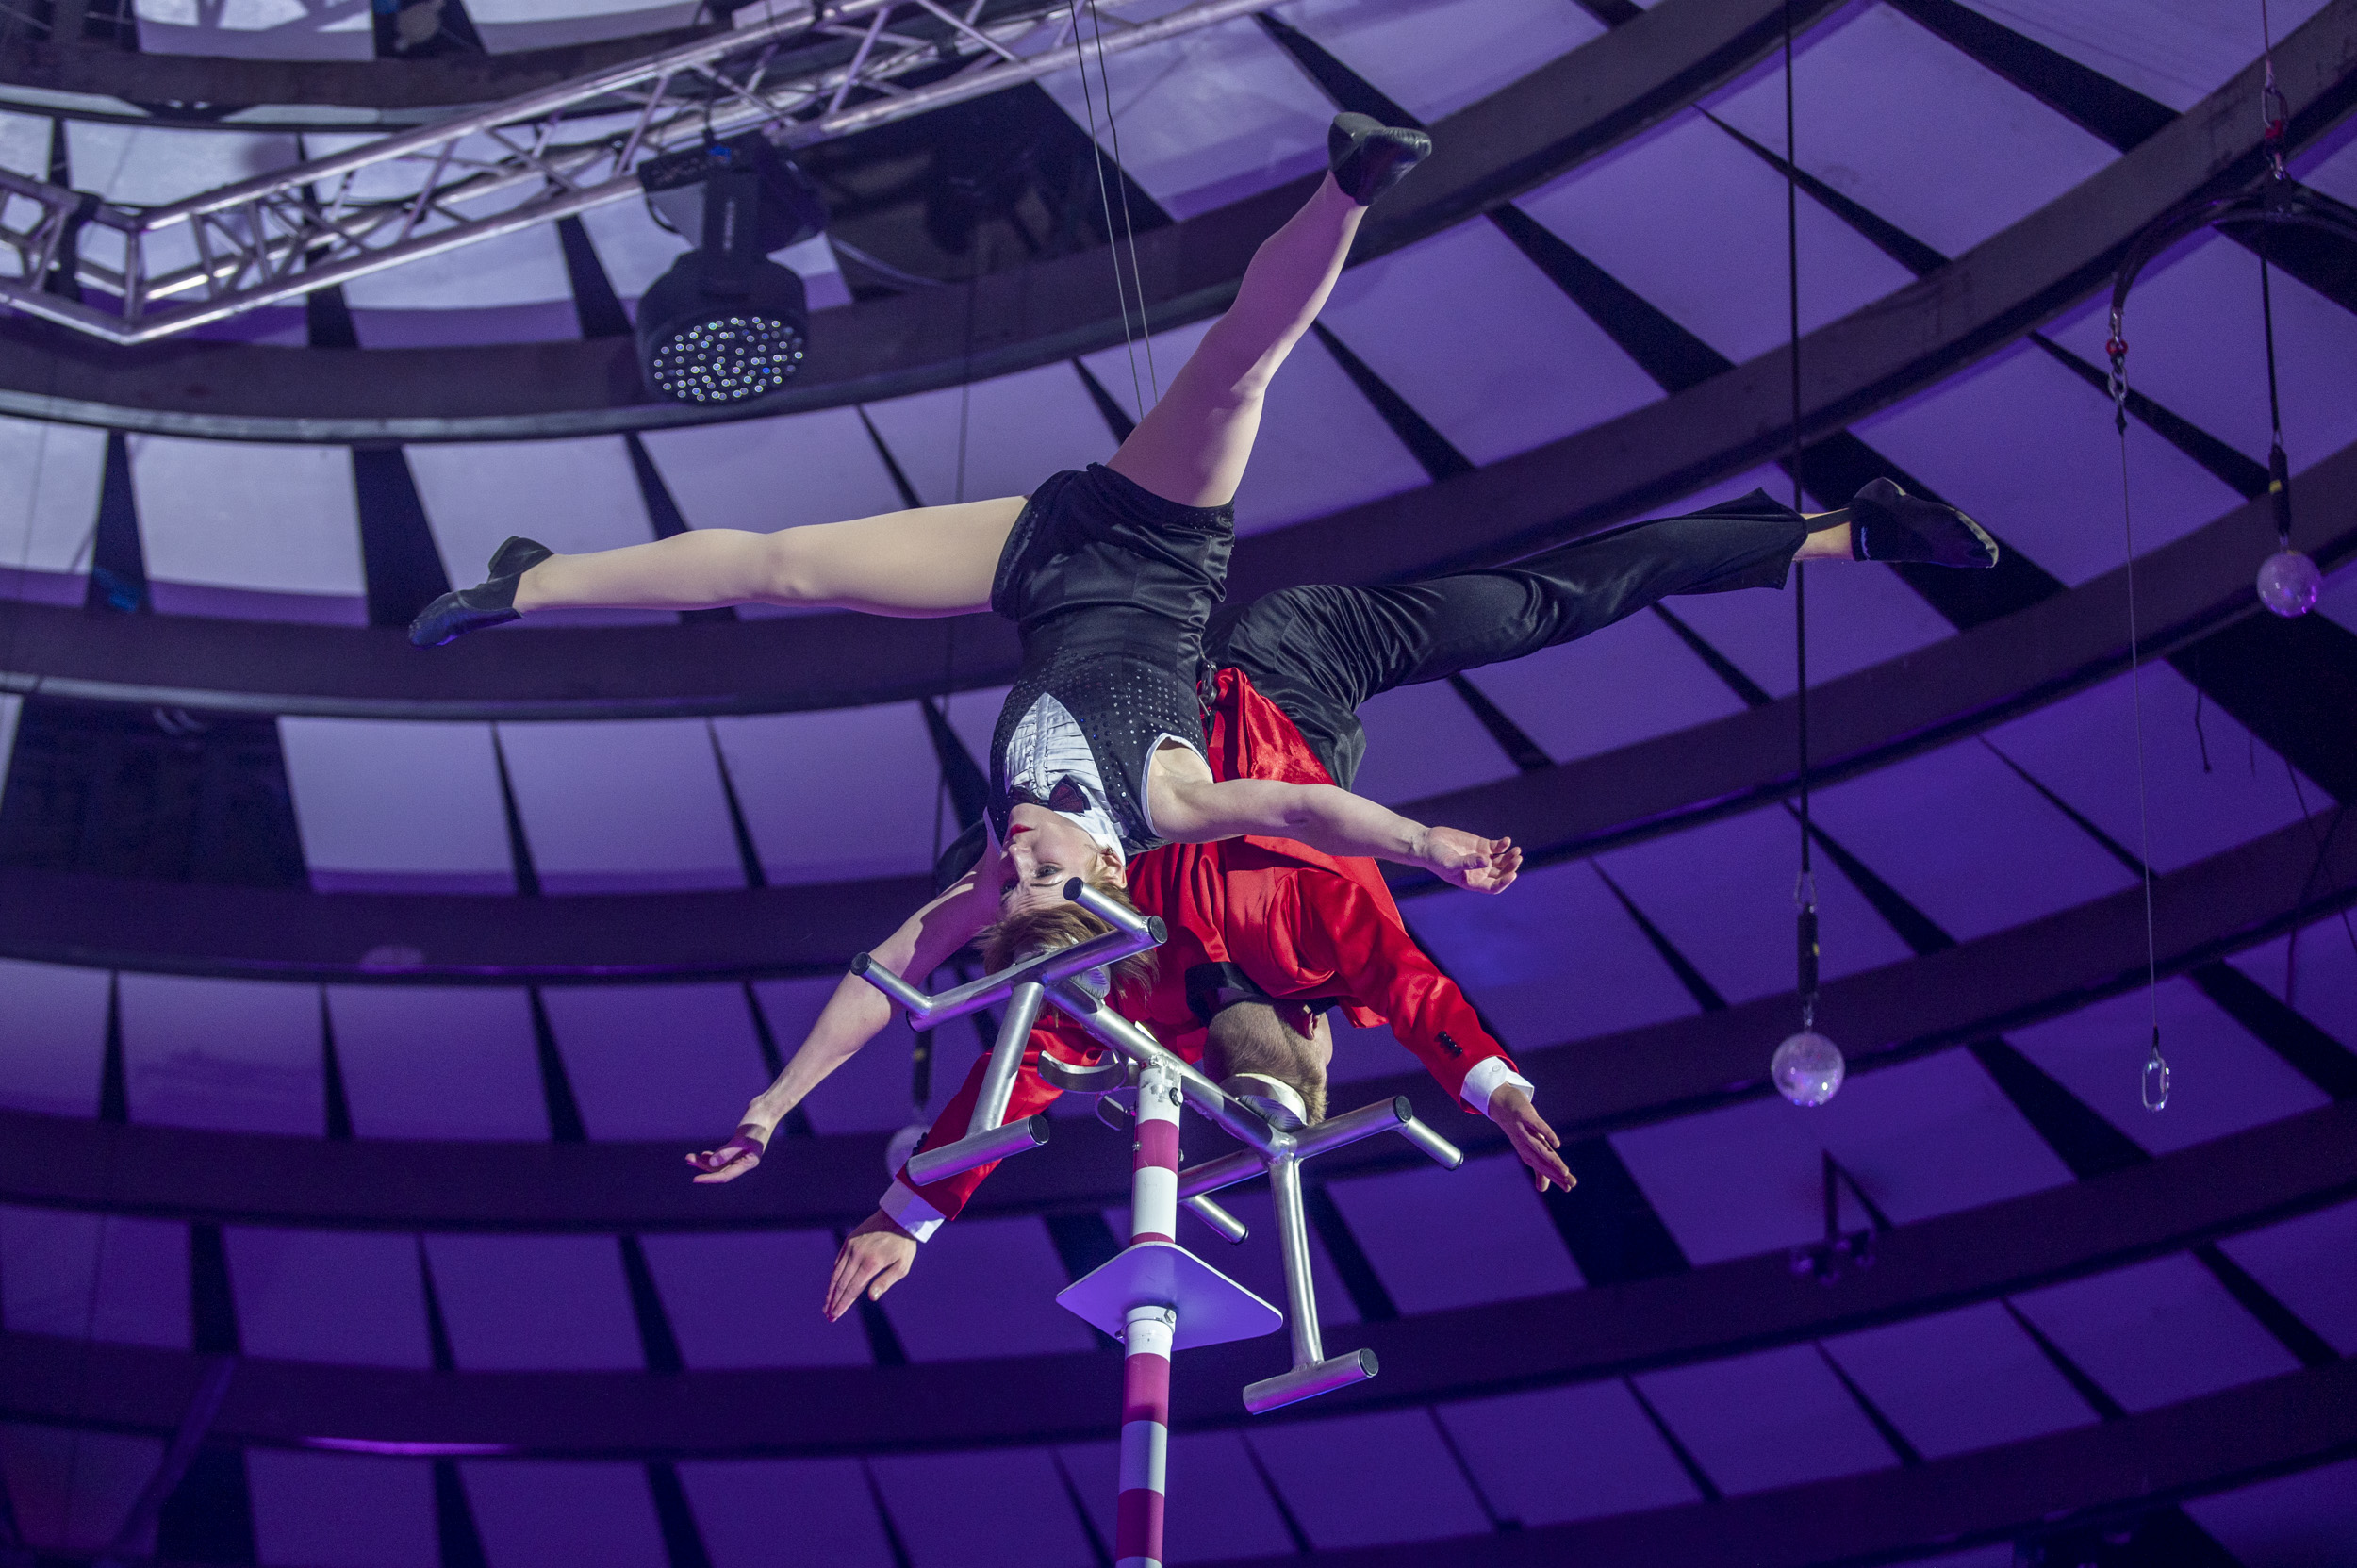 Családi összhang egy elképesztő cirkuszi produkcióban – Interjú a Markin Family-vel